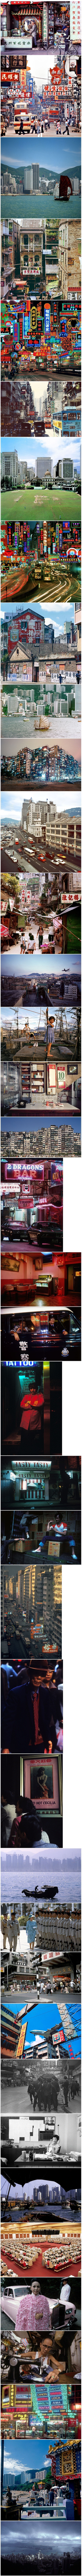 80년대 홍콩.jpg